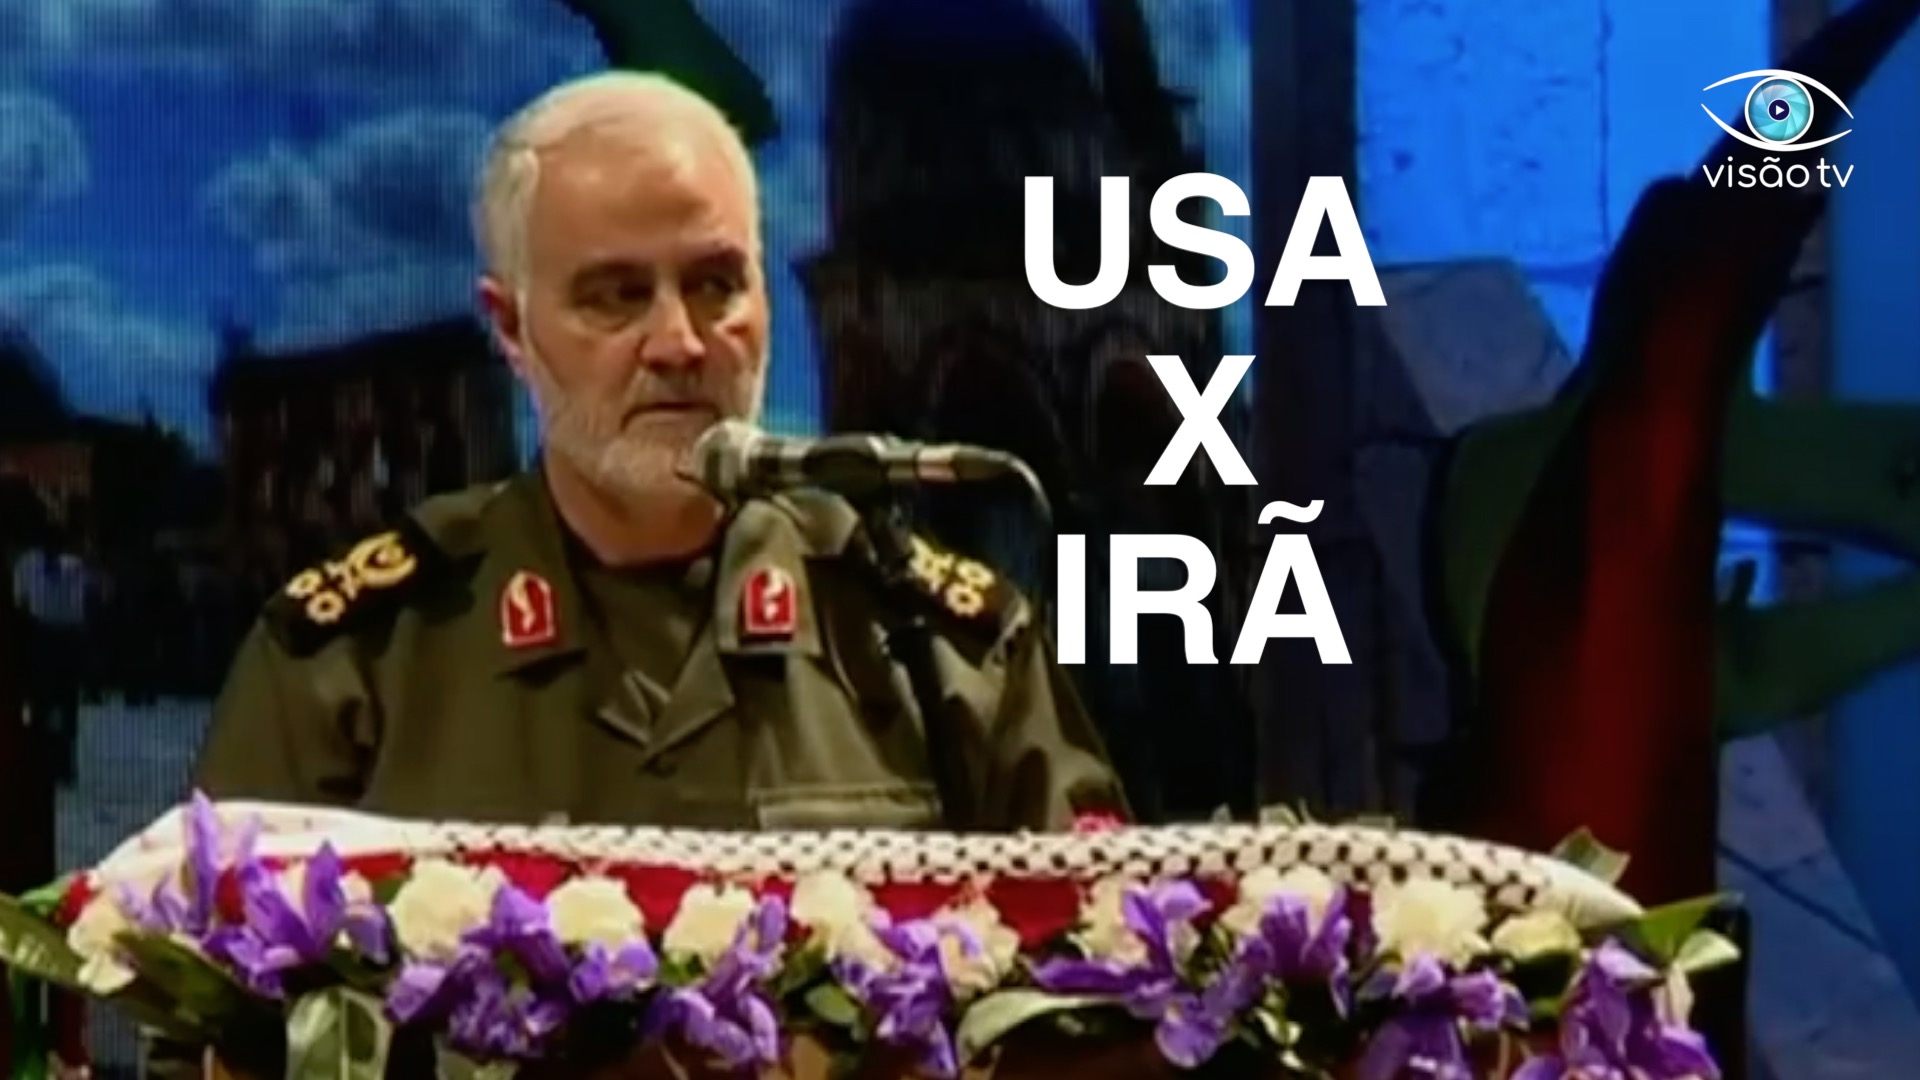 Quais as reais chances de guerra entre os USA e Irã depois da morte do General?